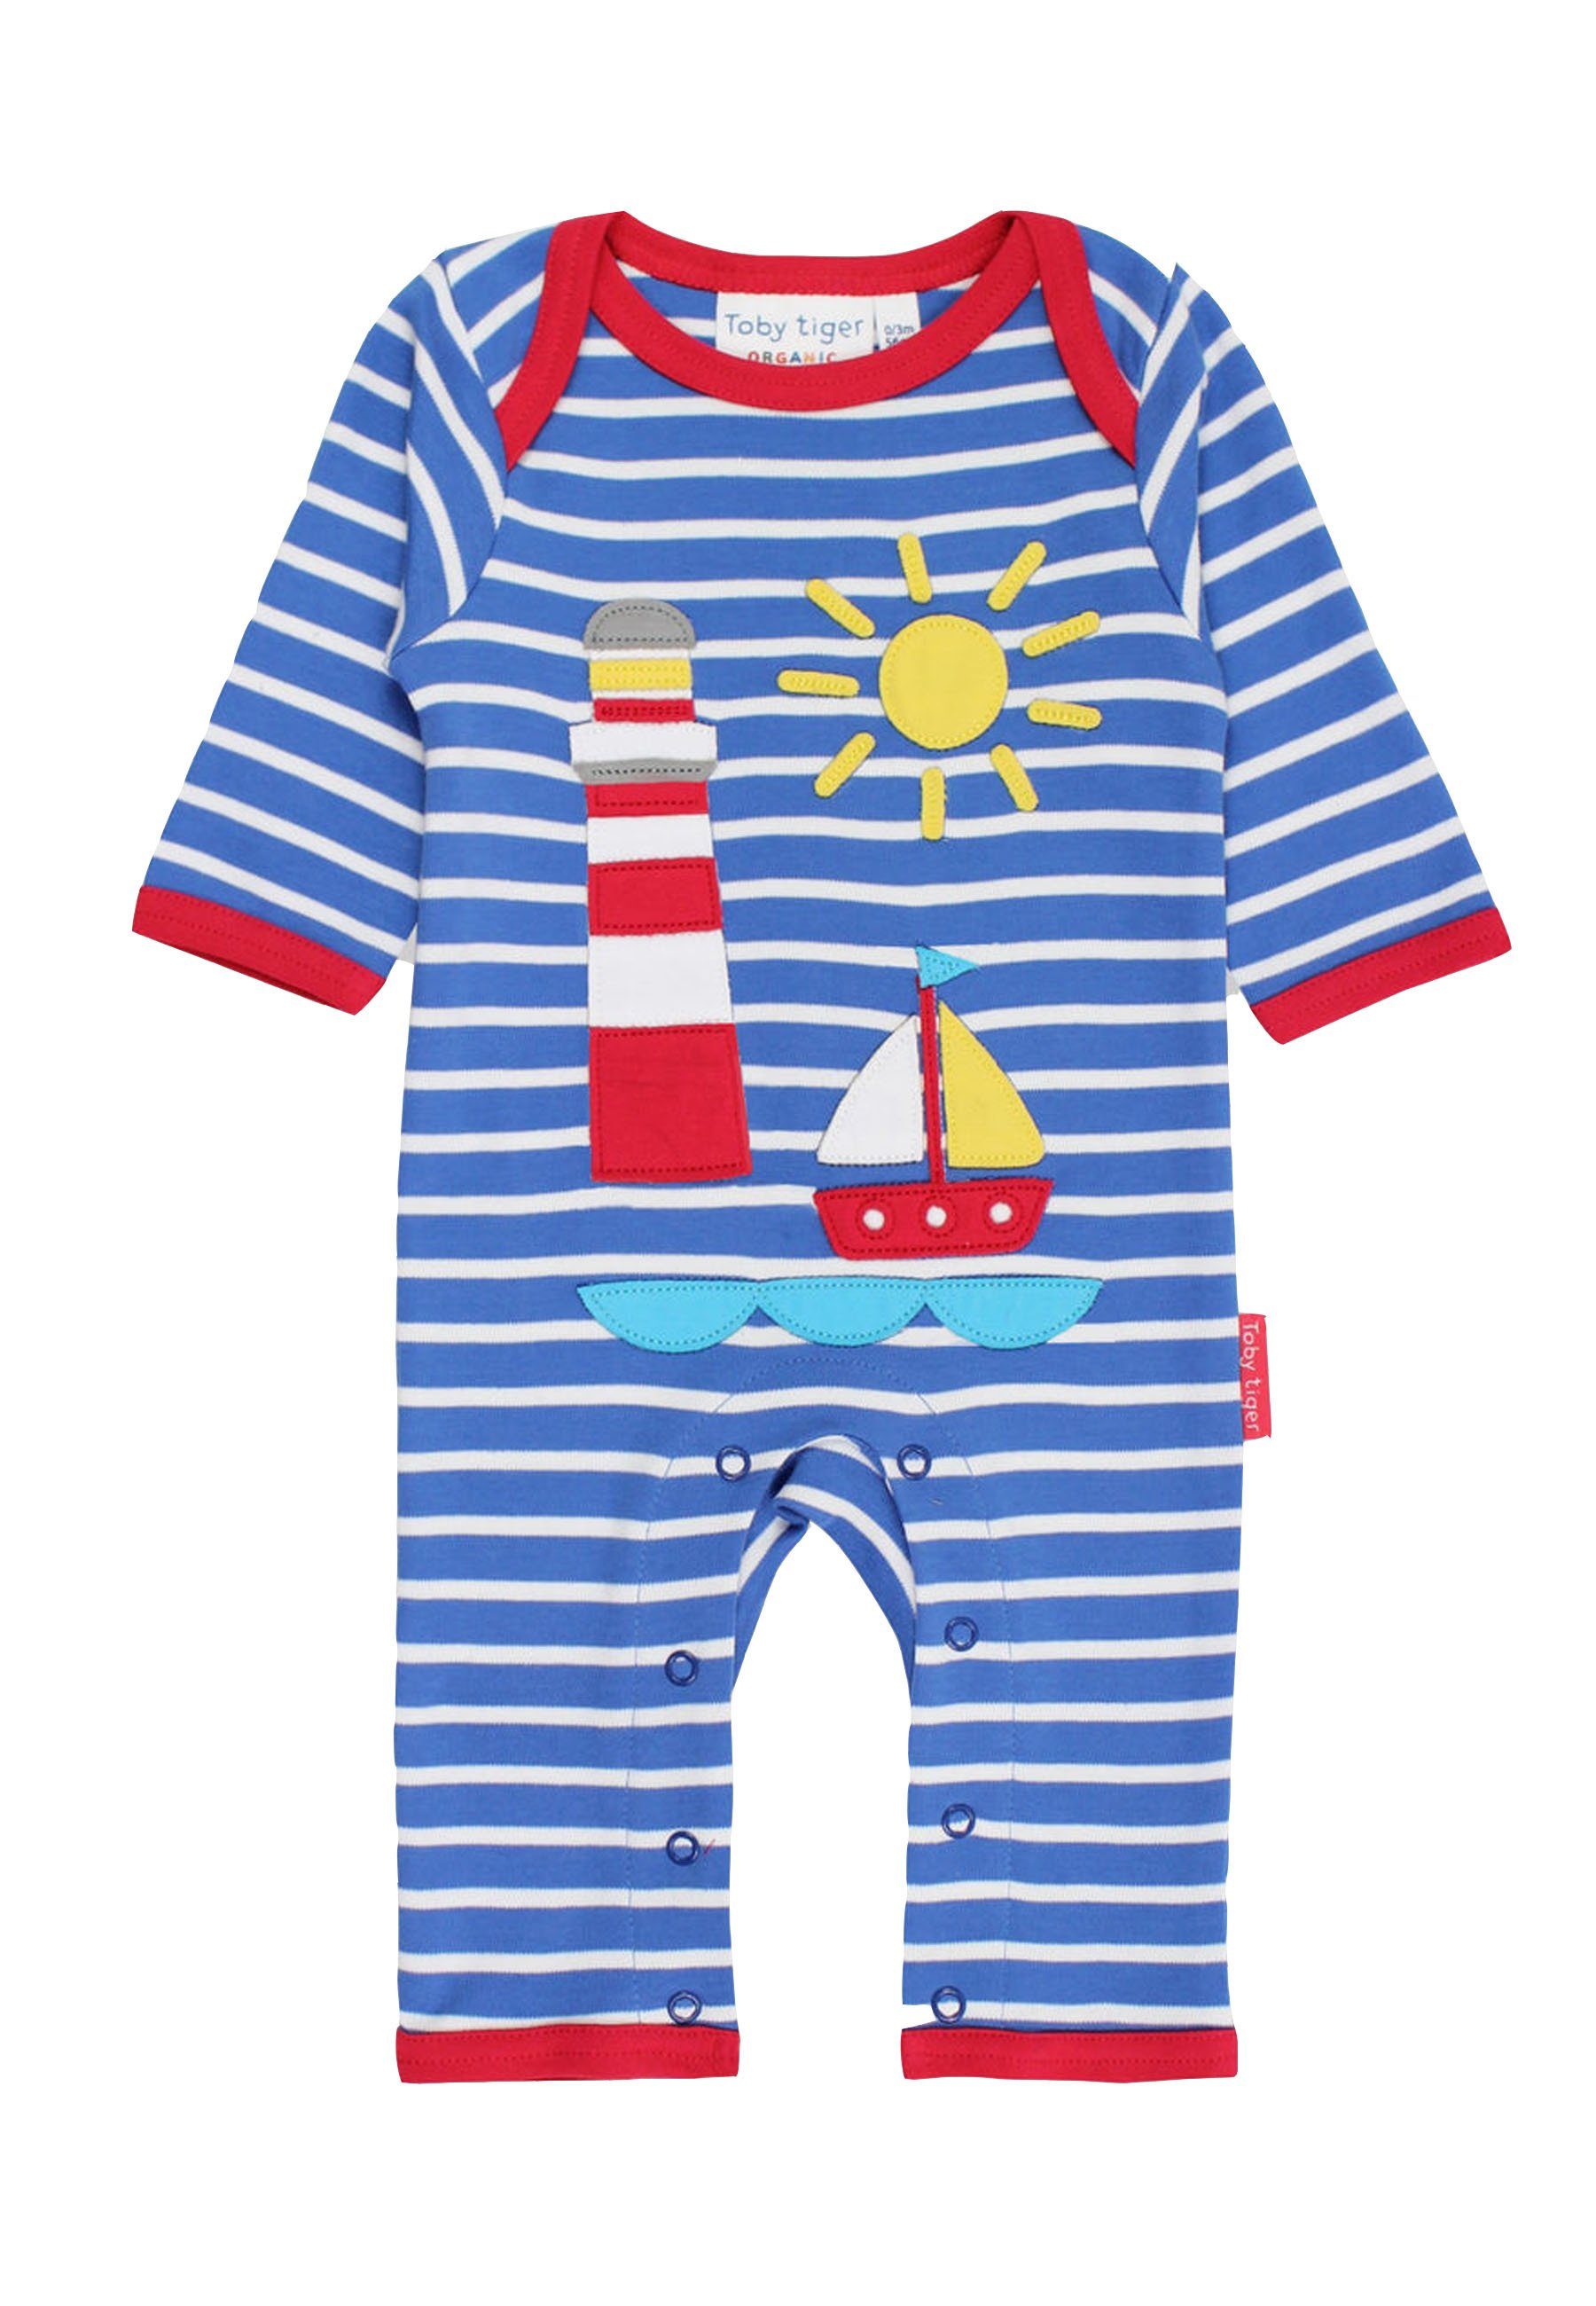 Toby Tiger Schlafanzug Schlafanzug mit Segelboot Applikation